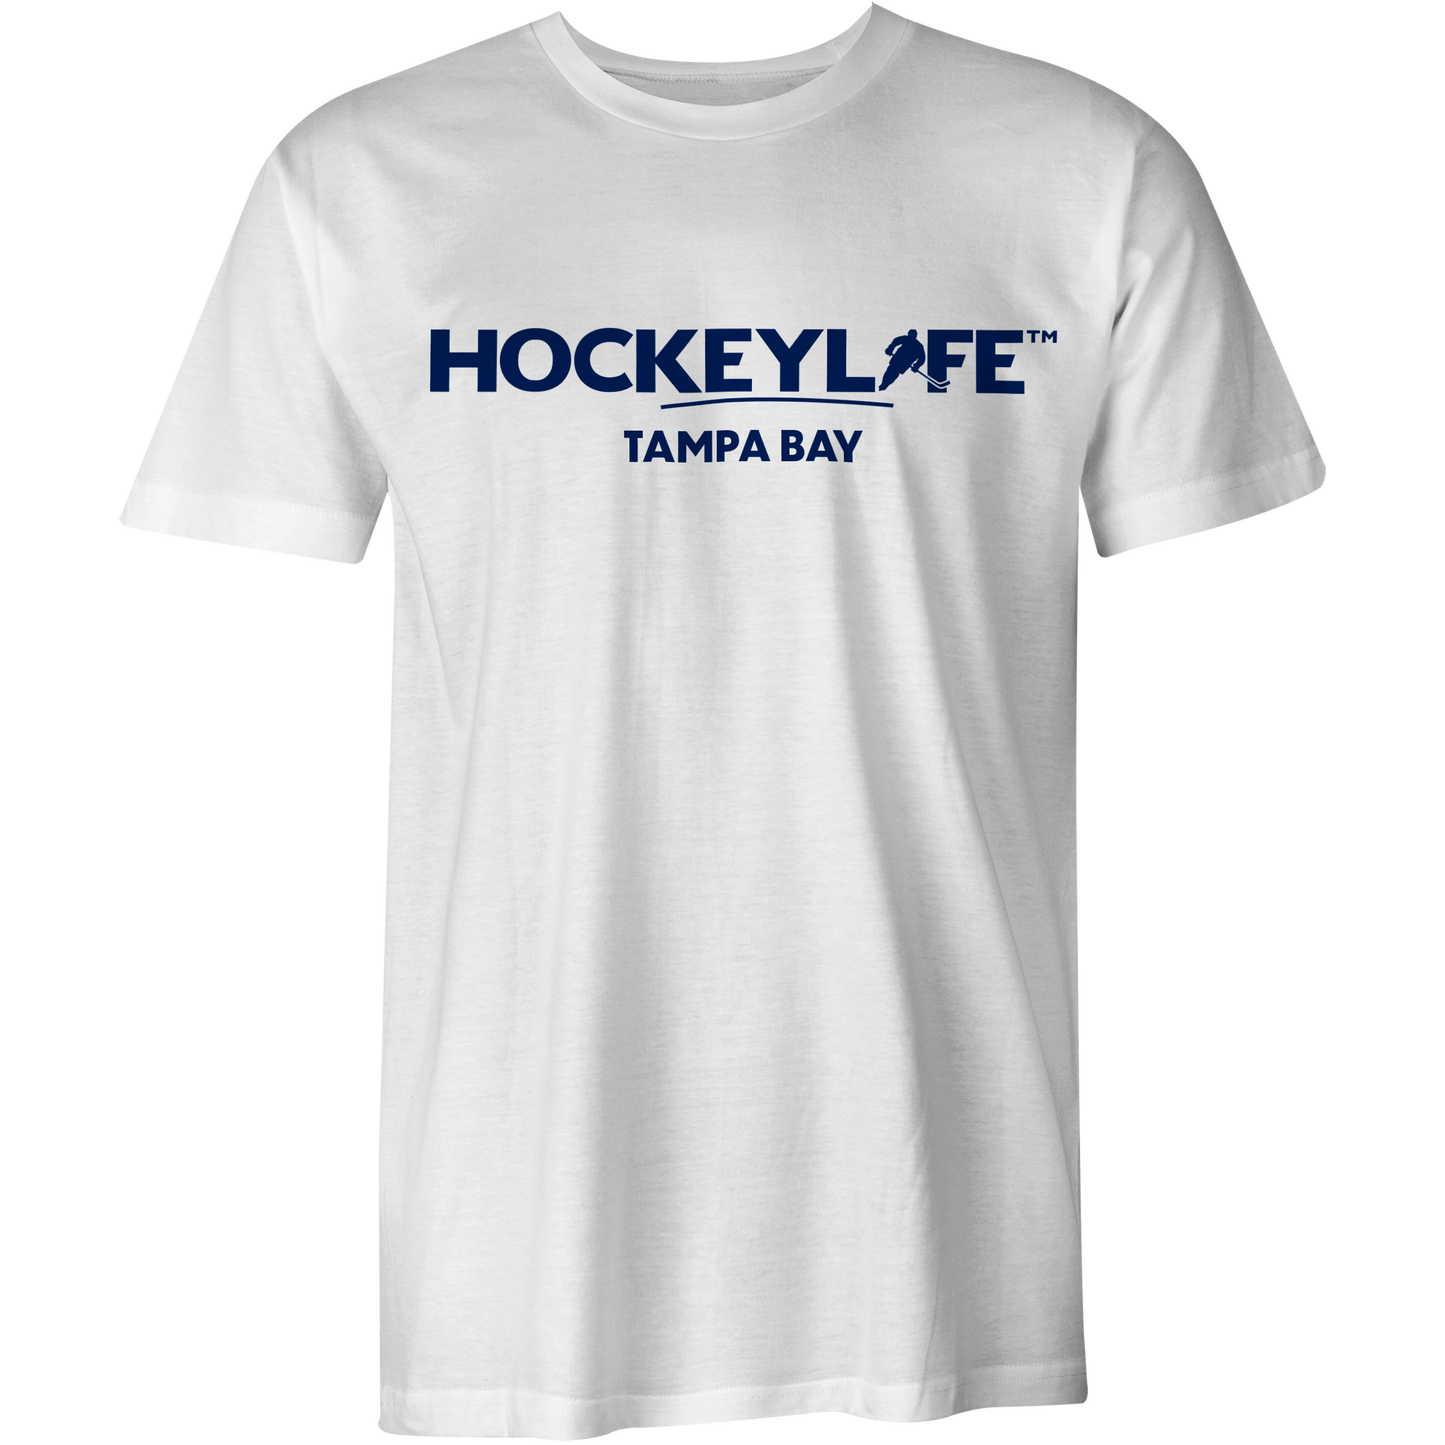 HockeyLife Tampa Bay Tee Shirt